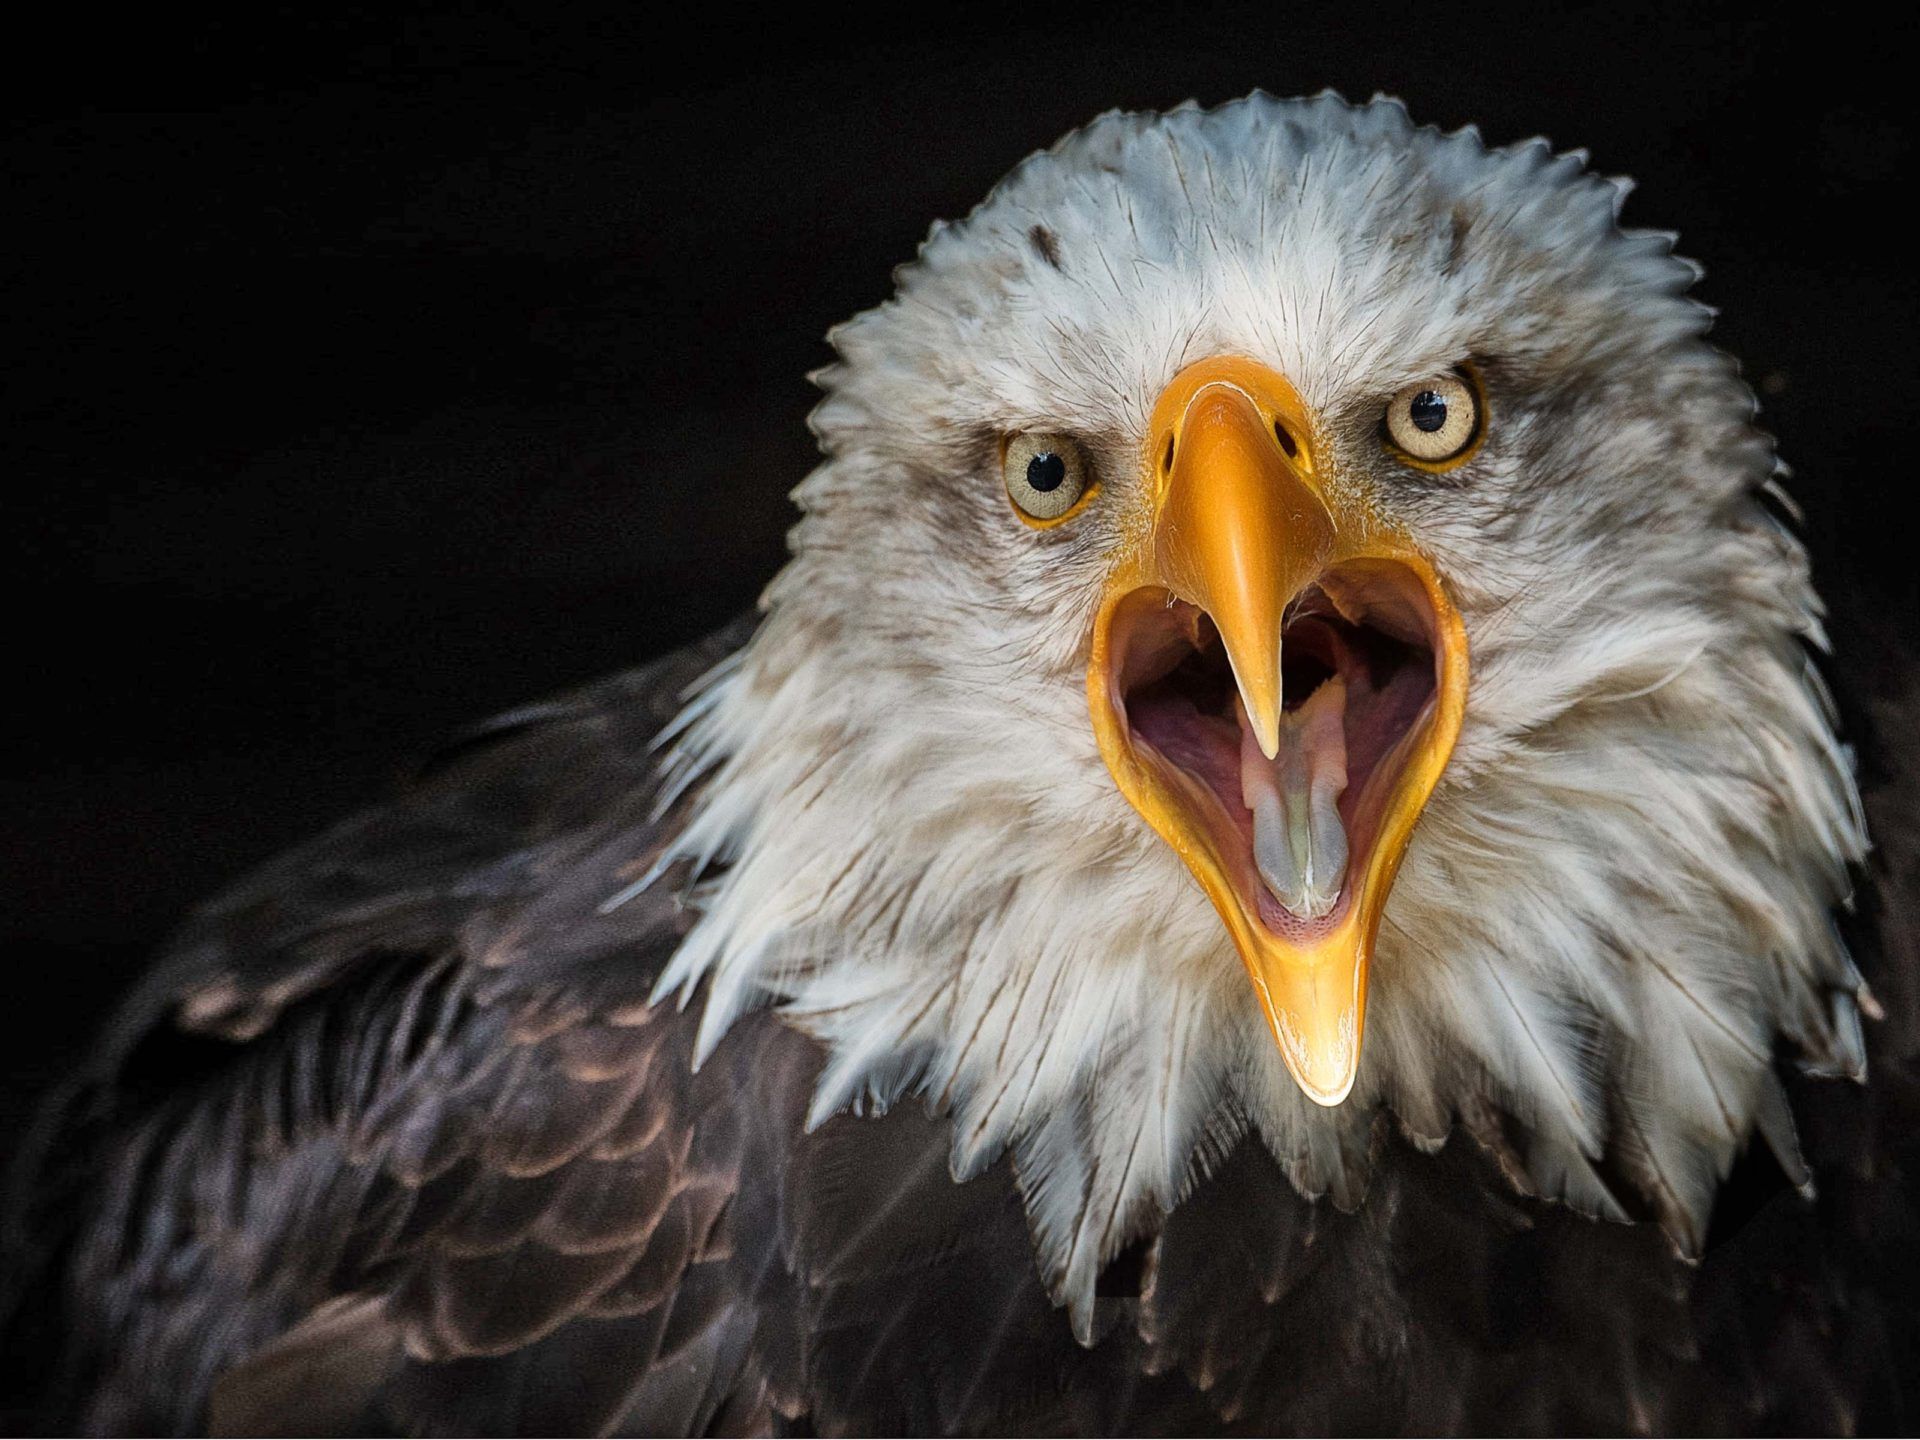 Bird Bald Eagle From Close Up 4k Ultra HD Wallpaper For Desktop